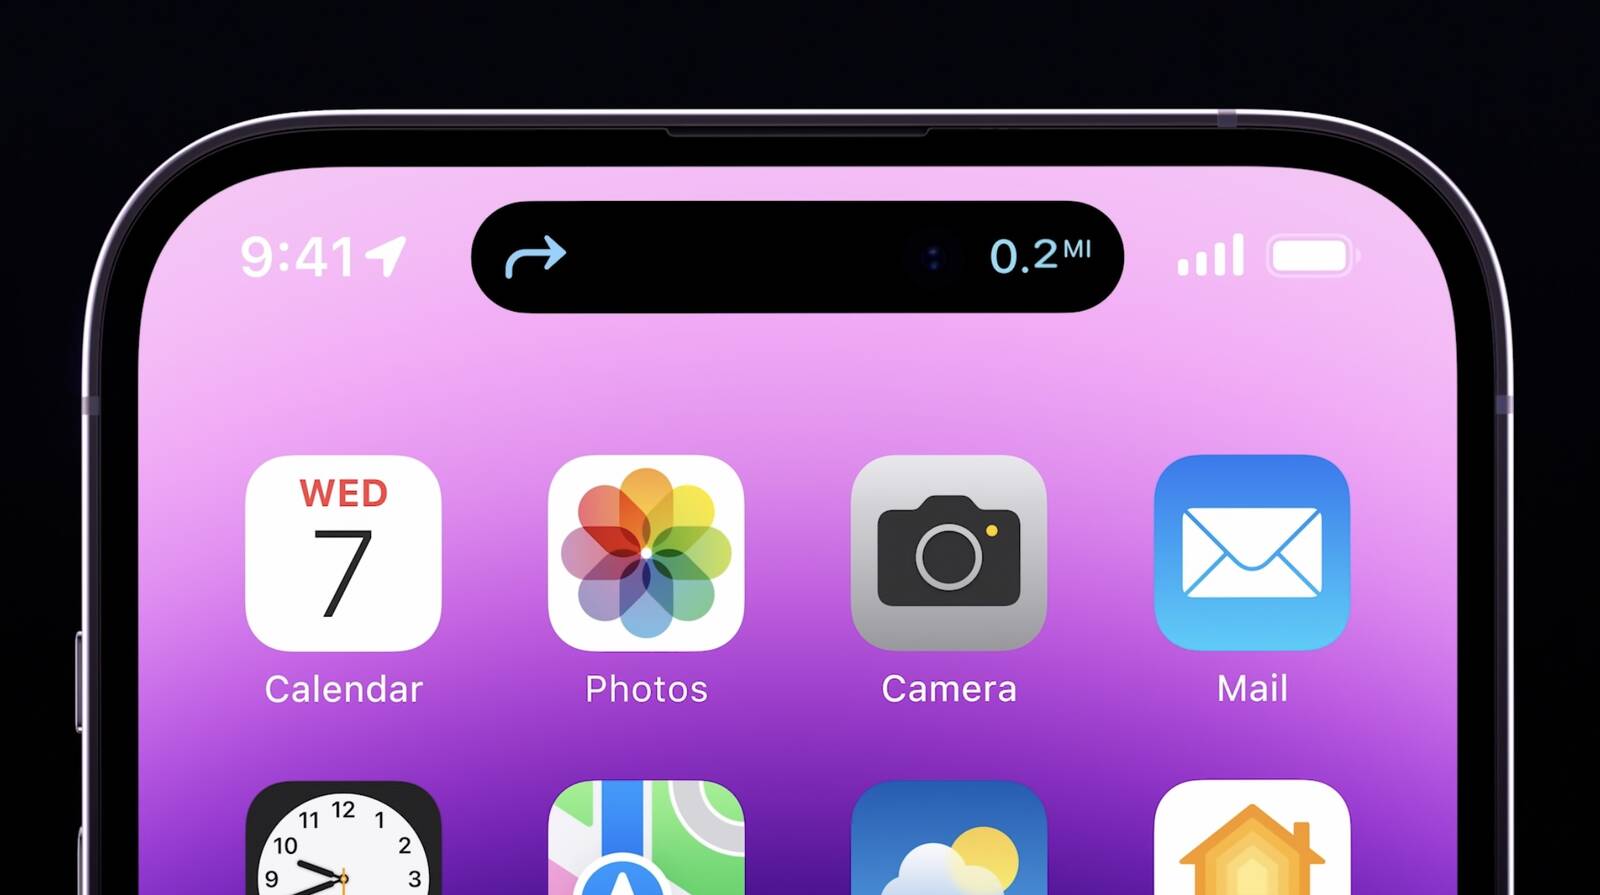 Màu tím iPhone 14 Pro Max không chỉ mang đến sự sang trọng, quý phái, mà còn giúp bạn ghi điểm với những người xung quanh bằng một chiếc điện thoại đạt chất lượng tối đa. Với màn hình rộng và chất lượng hiển thị tuyệt vời, hình nền màu tím cũng rất đượm đà và lôi cuốn. Hãy chọn chiếc điện thoại iPhone 14 Pro Max và tải ngay hình nền màu tím này để trải nghiệm tuyệt vời nhất.